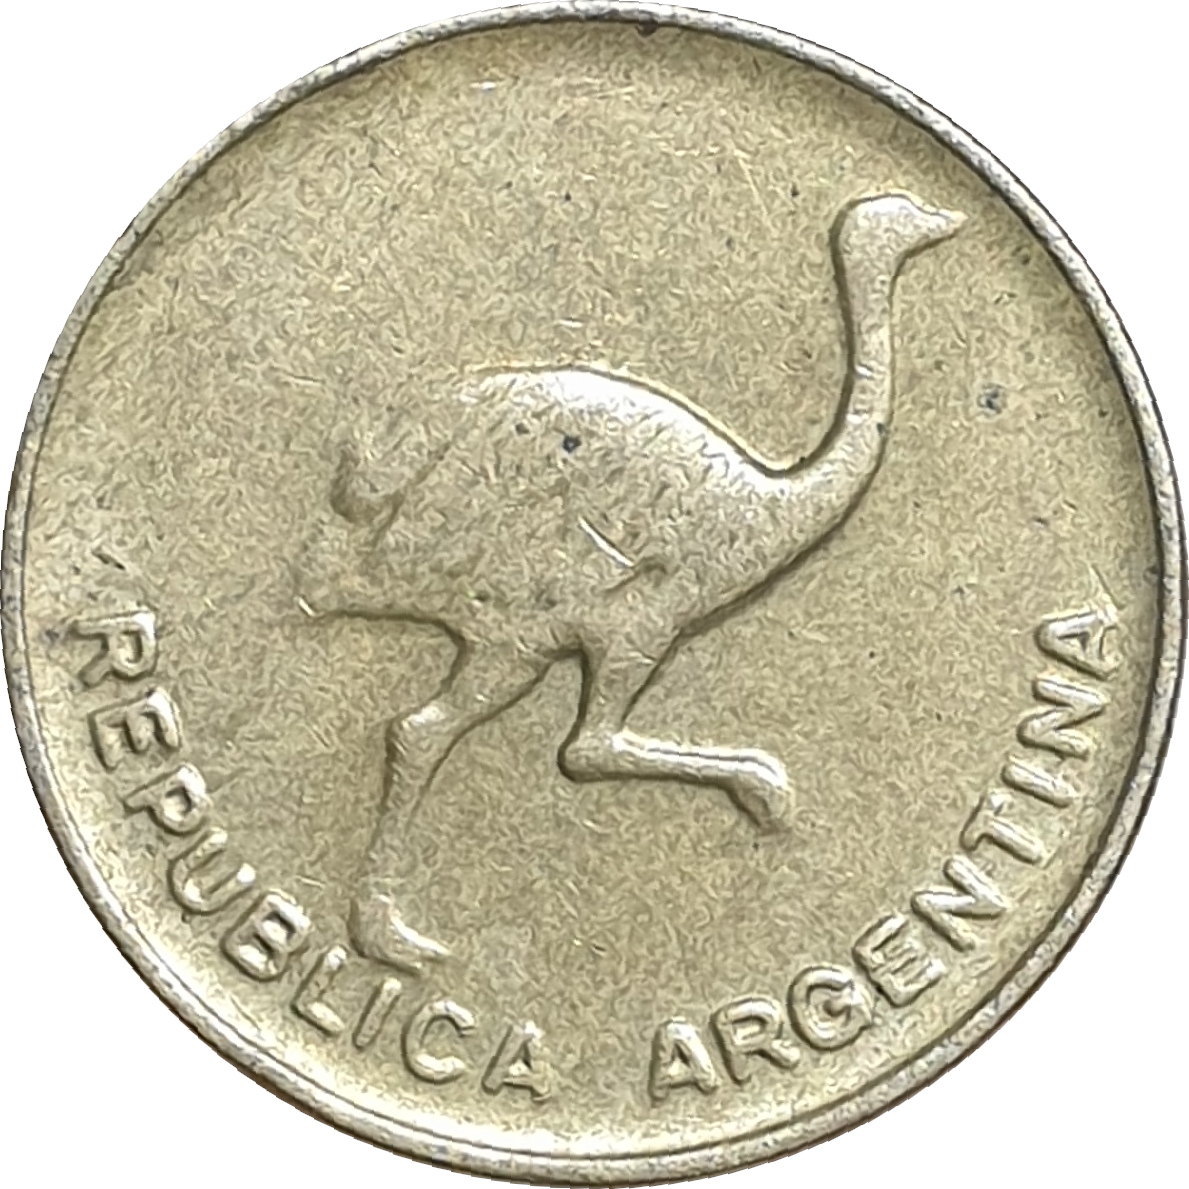 1 centavo - Autruche